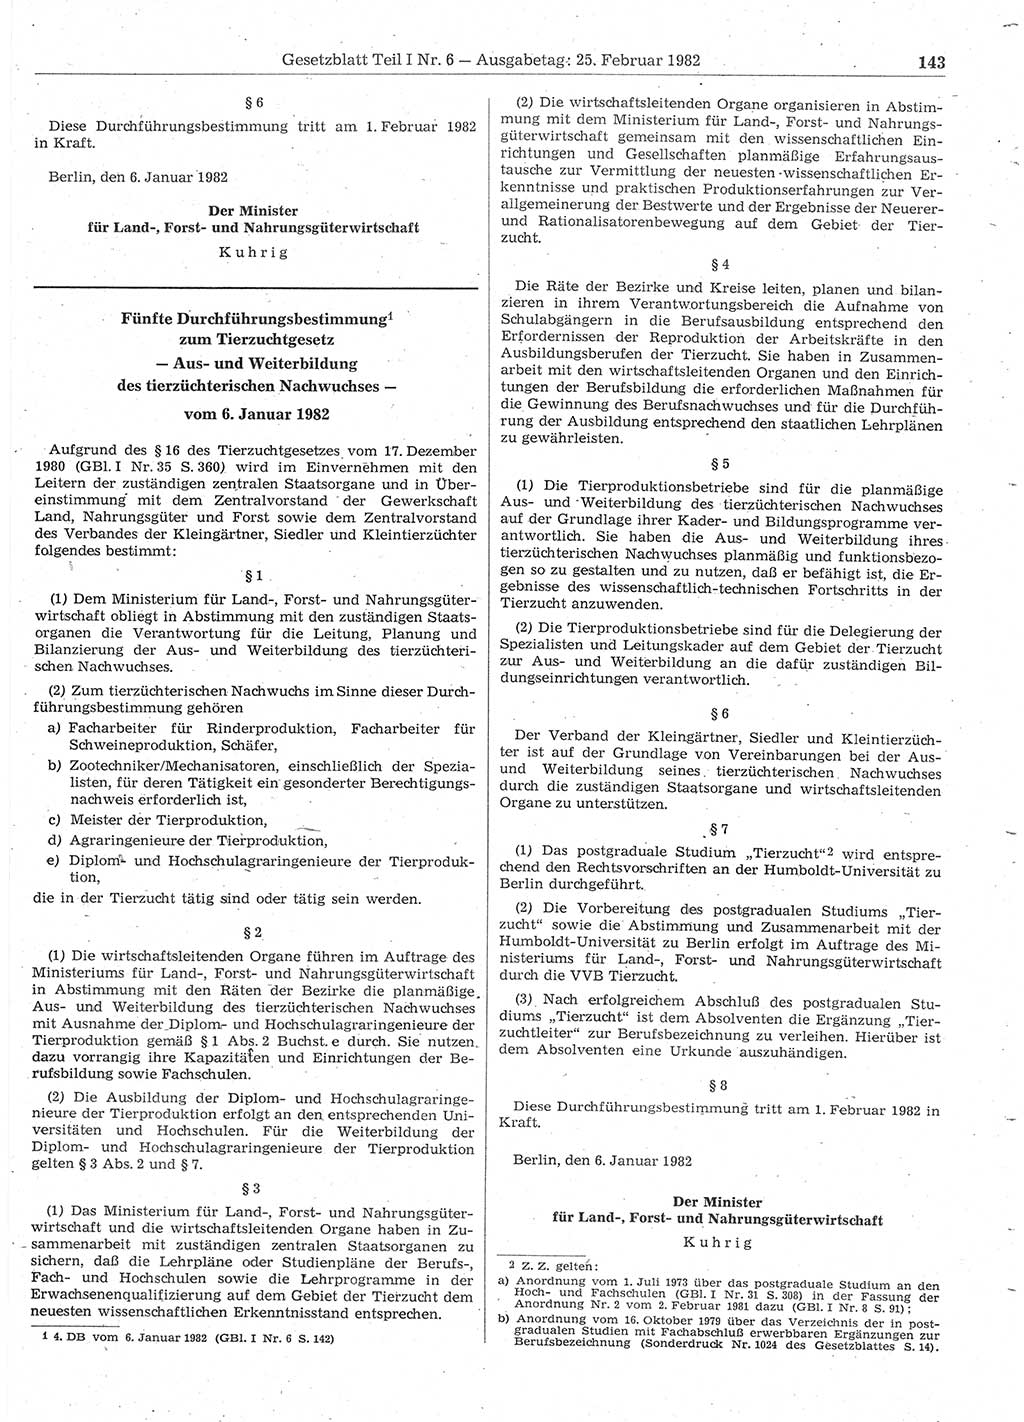 Gesetzblatt (GBl.) der Deutschen Demokratischen Republik (DDR) Teil Ⅰ 1982, Seite 143 (GBl. DDR Ⅰ 1982, S. 143)